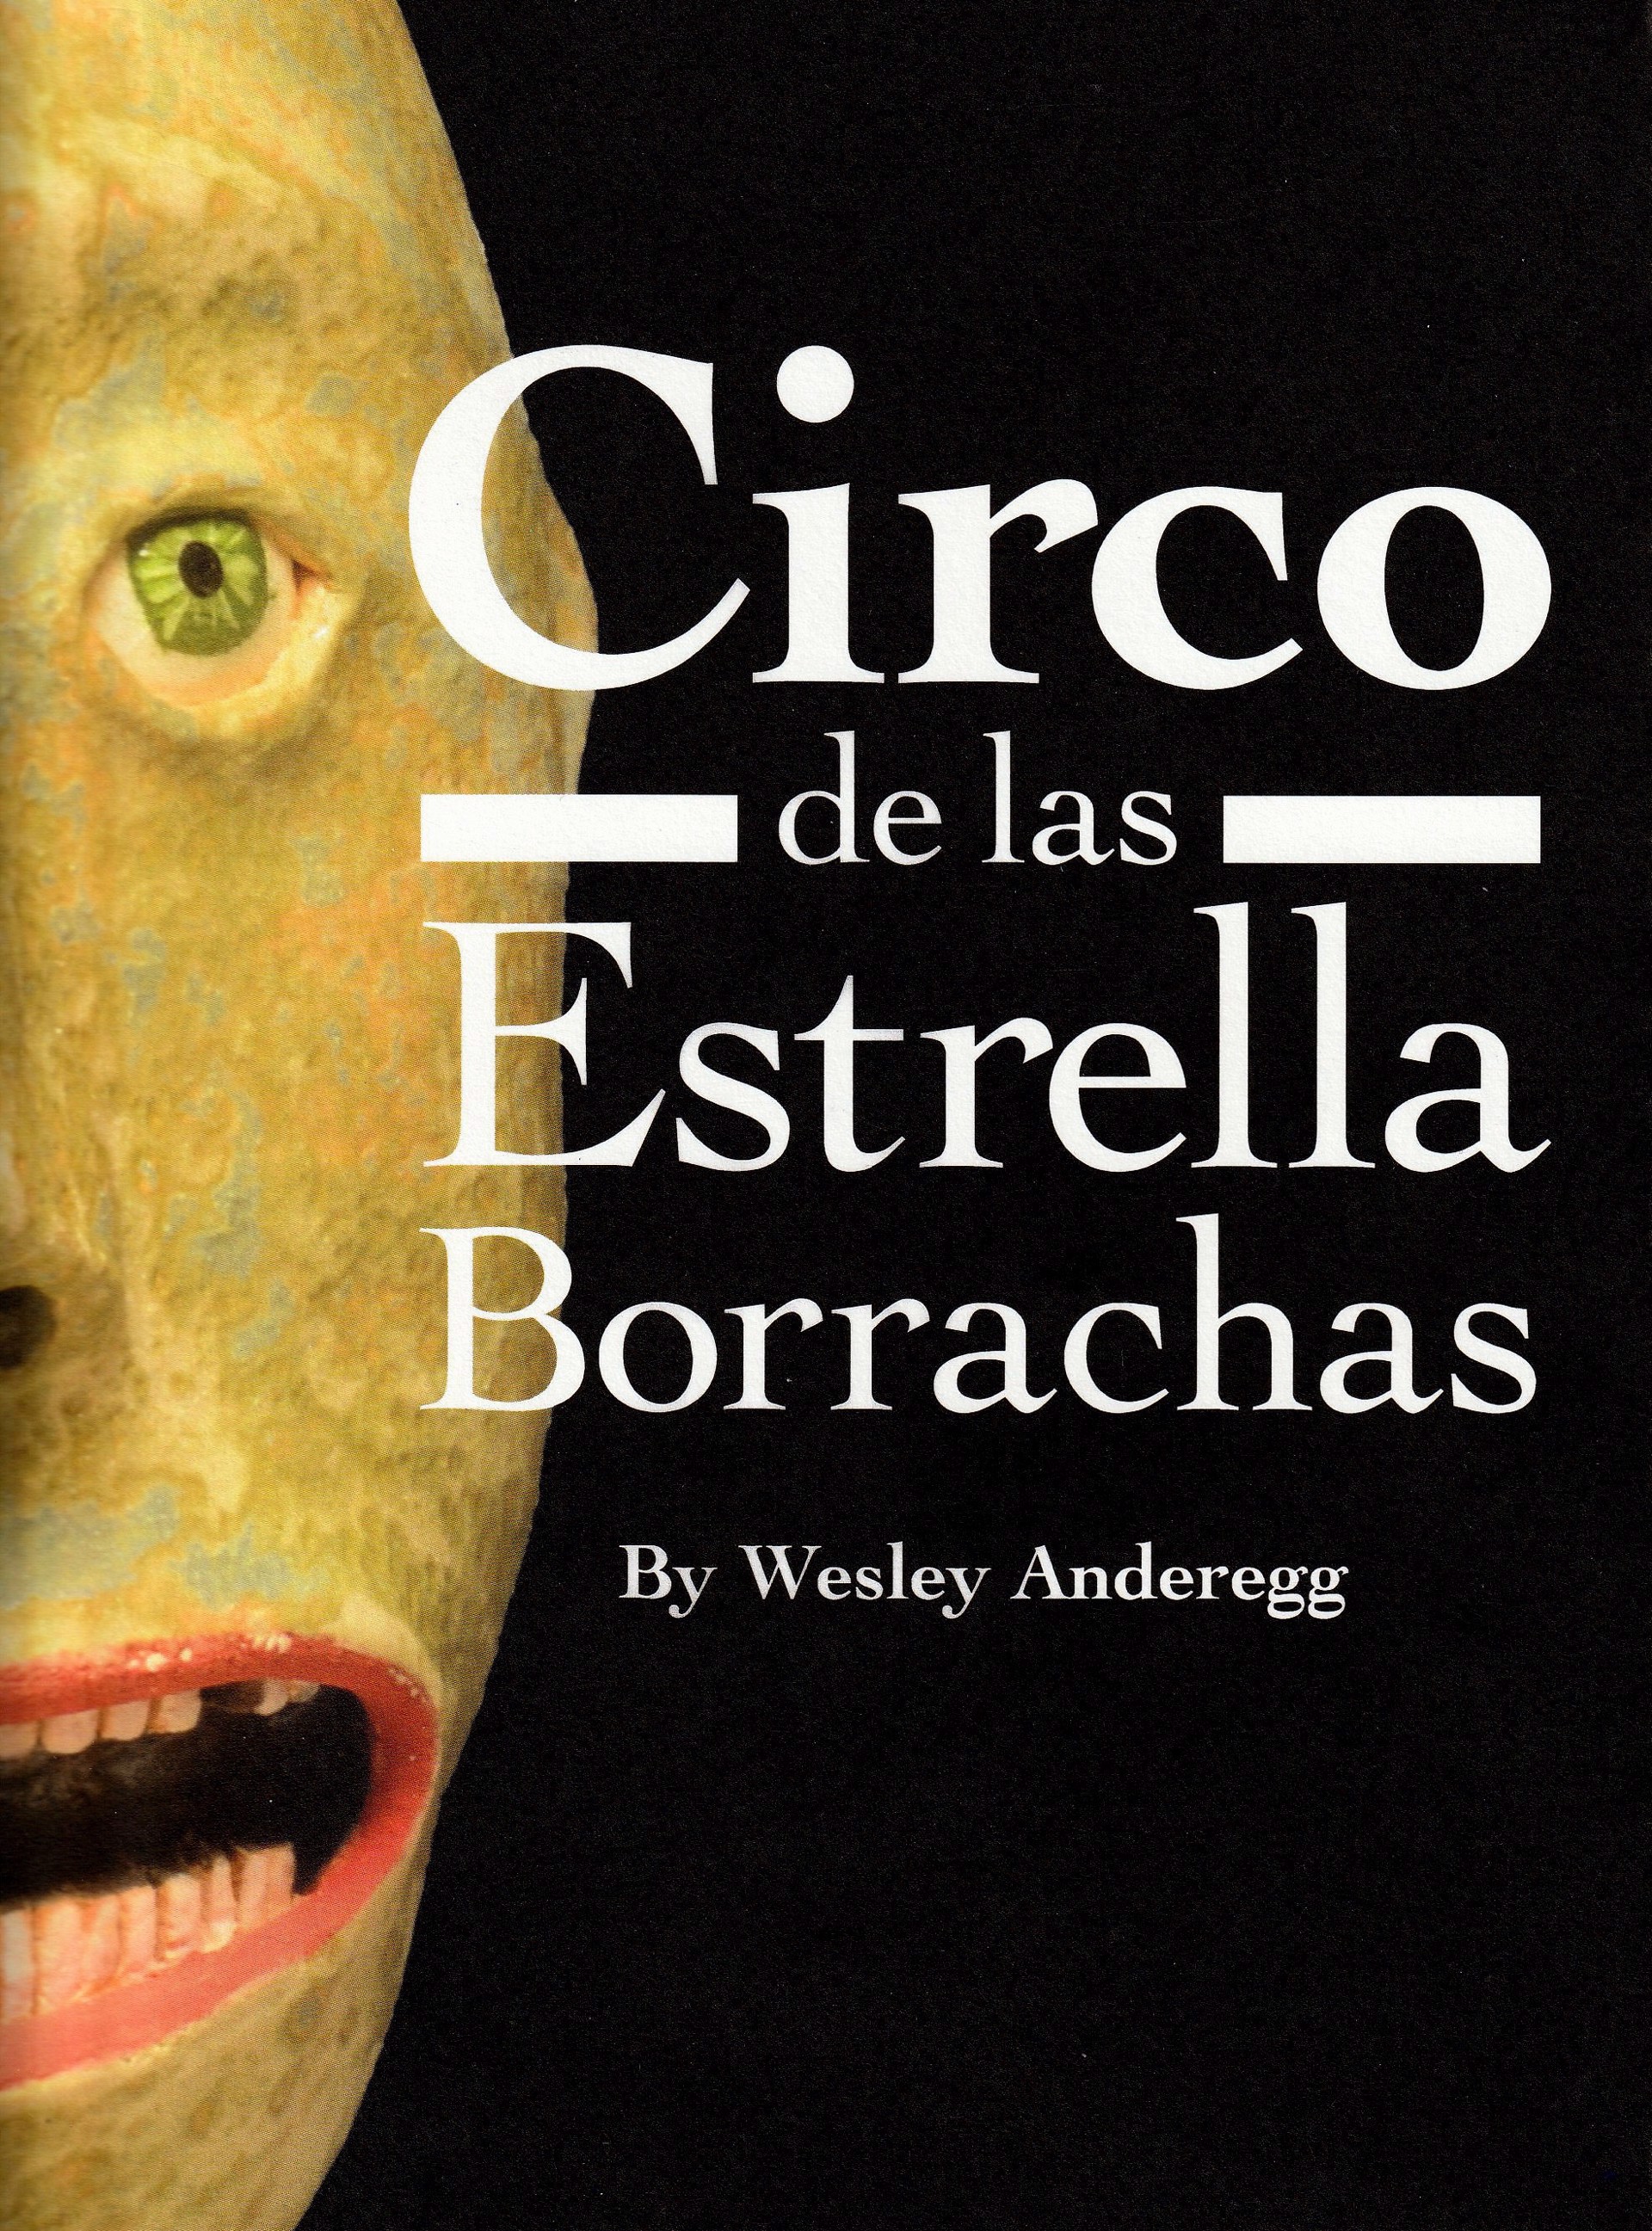 Circo de las Estella Borrachas by Wesley Anderegg